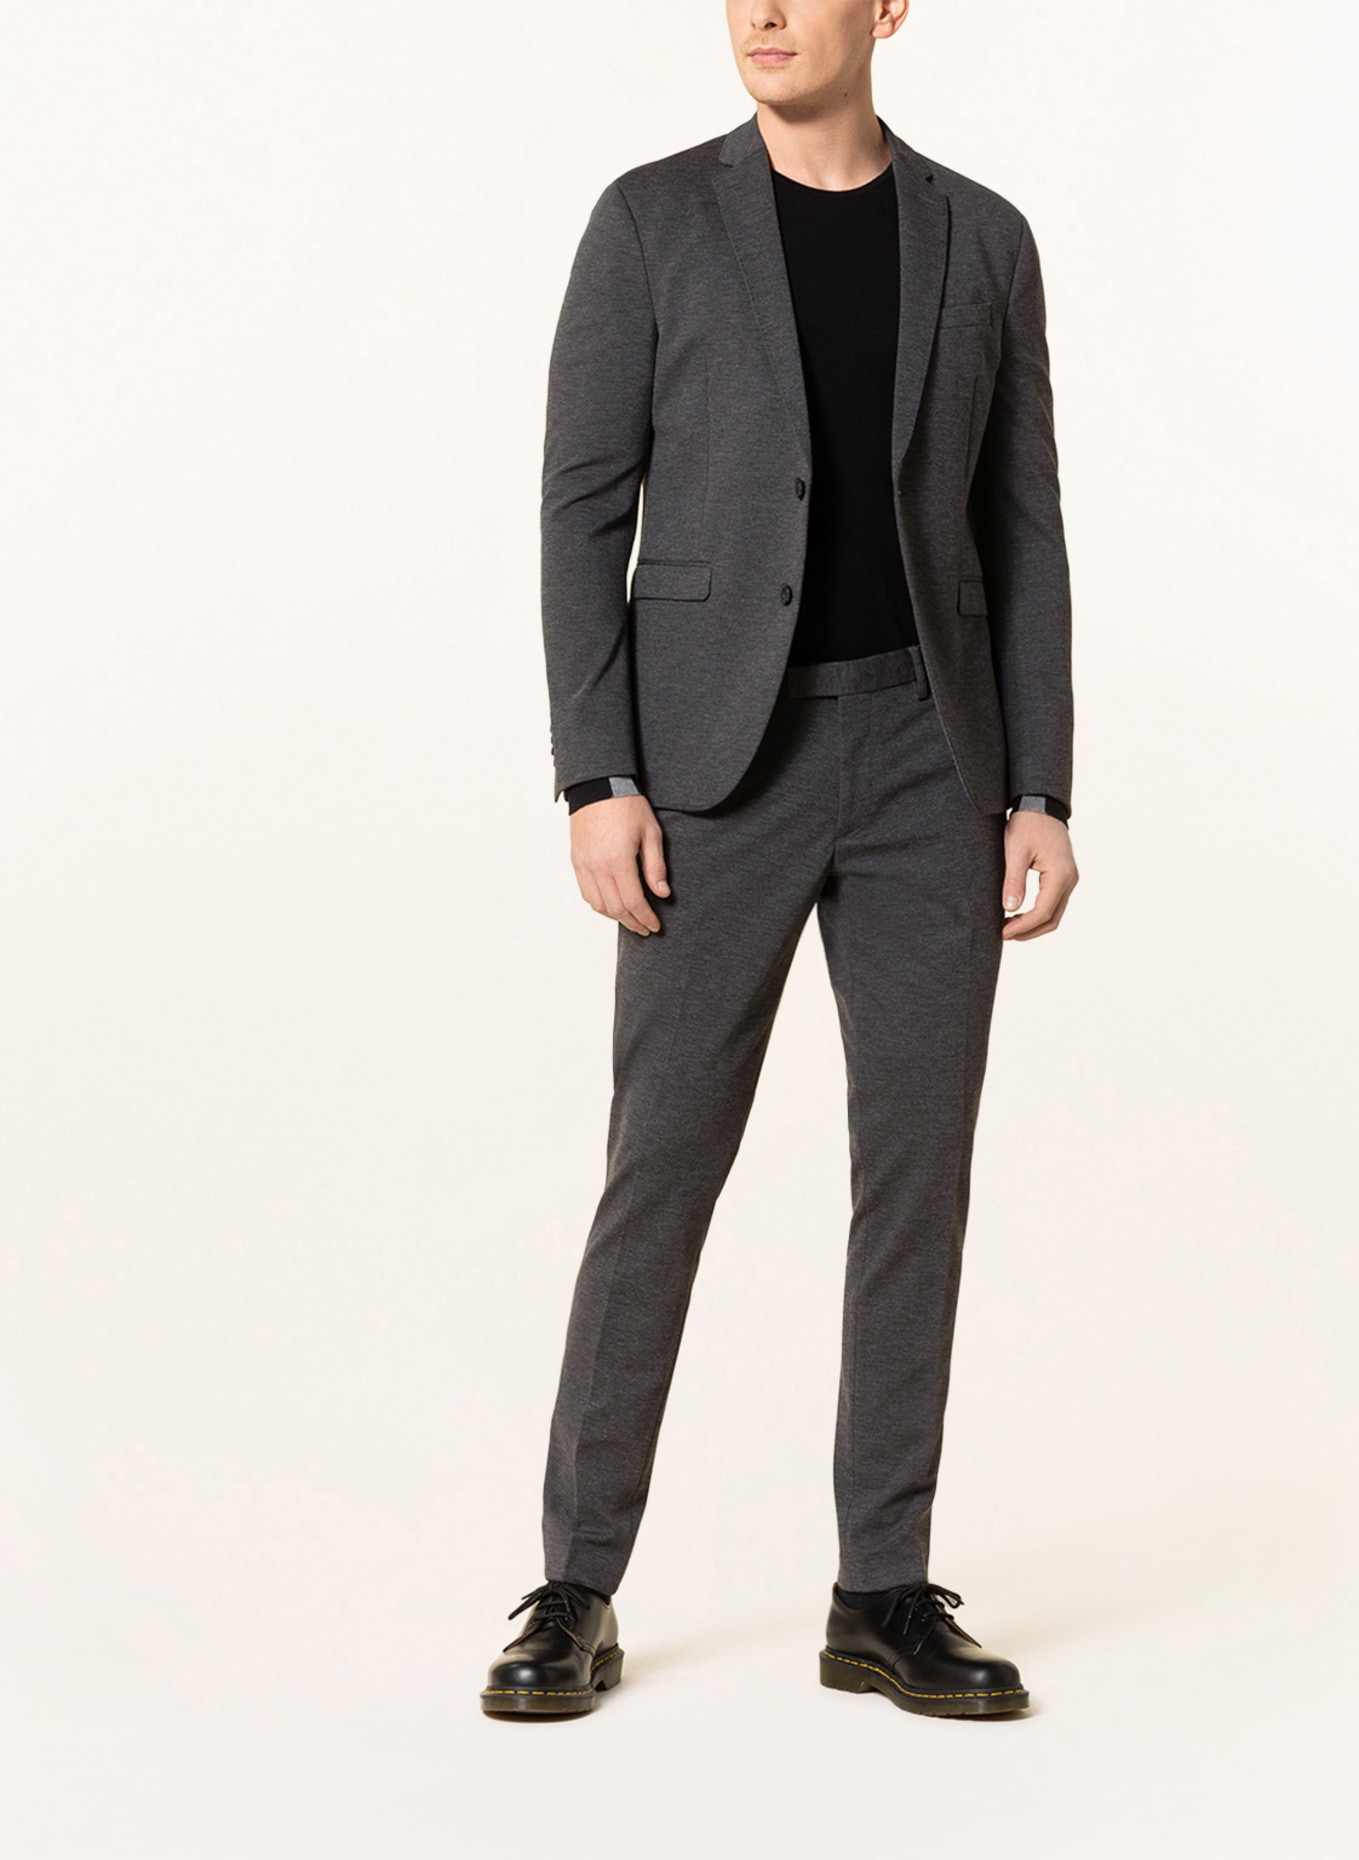 PAUL Suit jacket slim fit, Color: 750 Charcoal (Image 2)